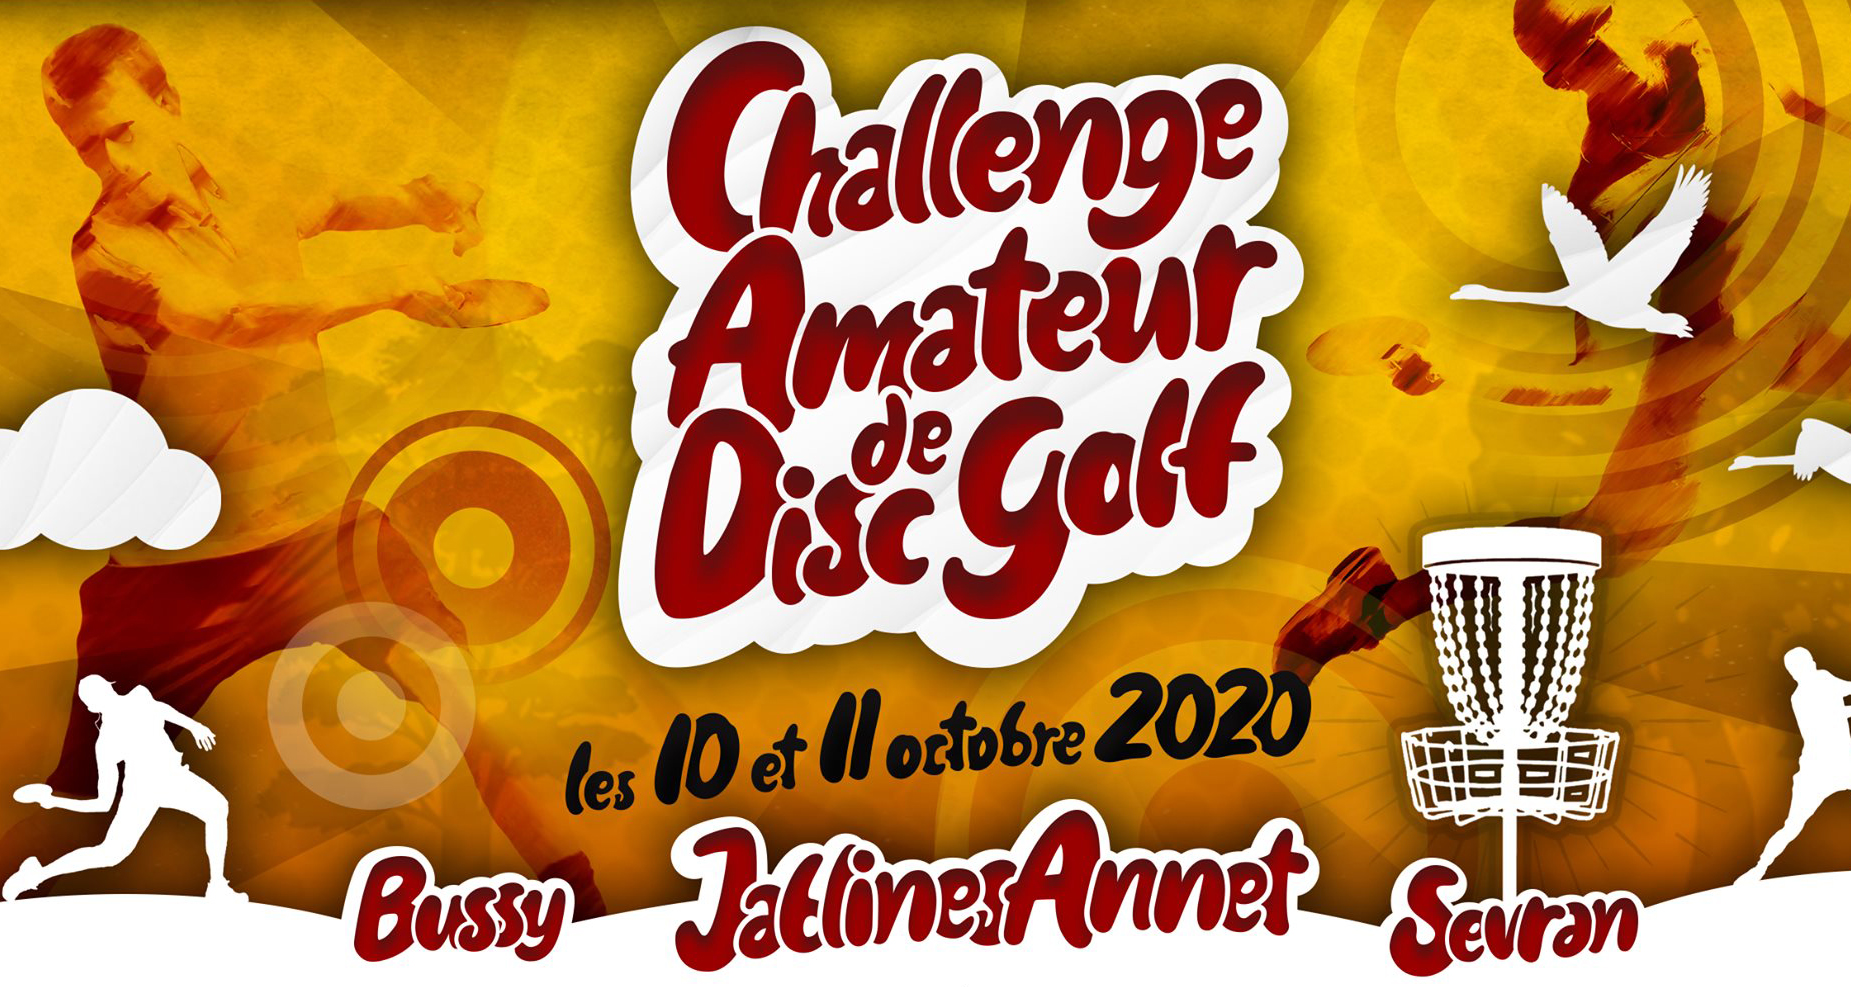 Challenge Amateur de Disc Golf FFFD 2020-2021